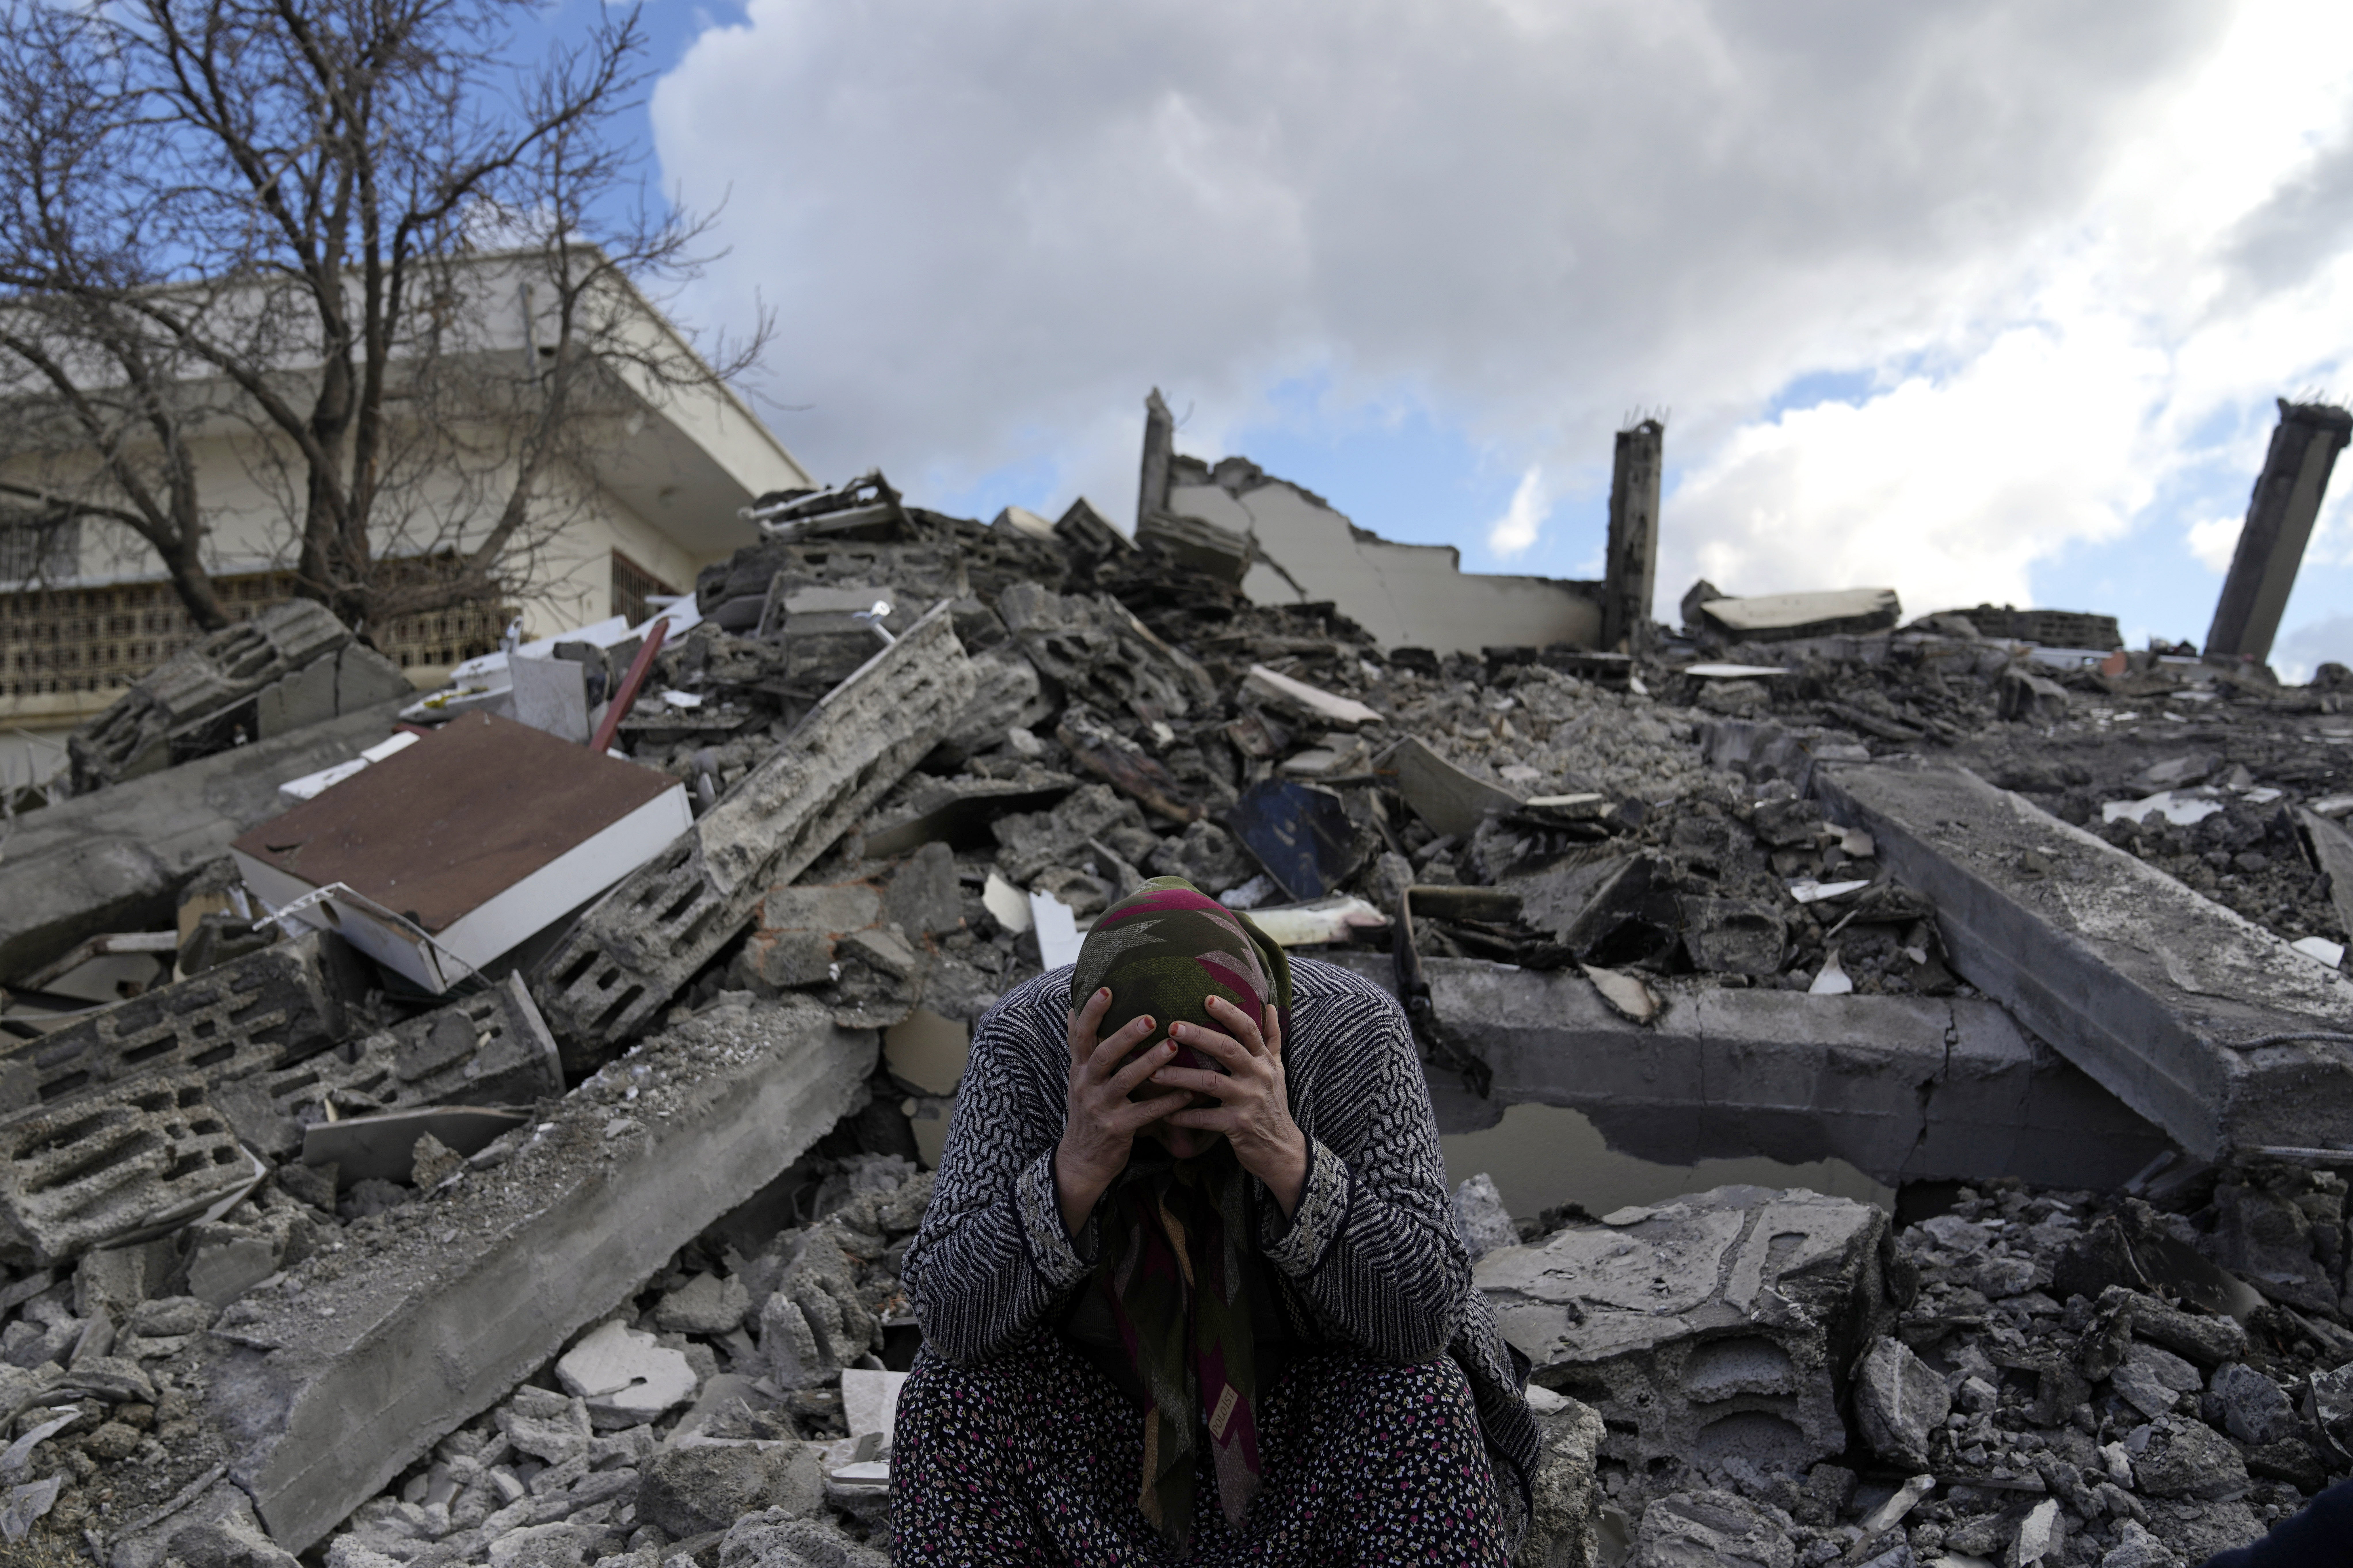 Török-szíriai földrengés: Több mint 9500 ember halt meg, a mentők versenyt futnak az idővel – Megrázó képek érkeztek 